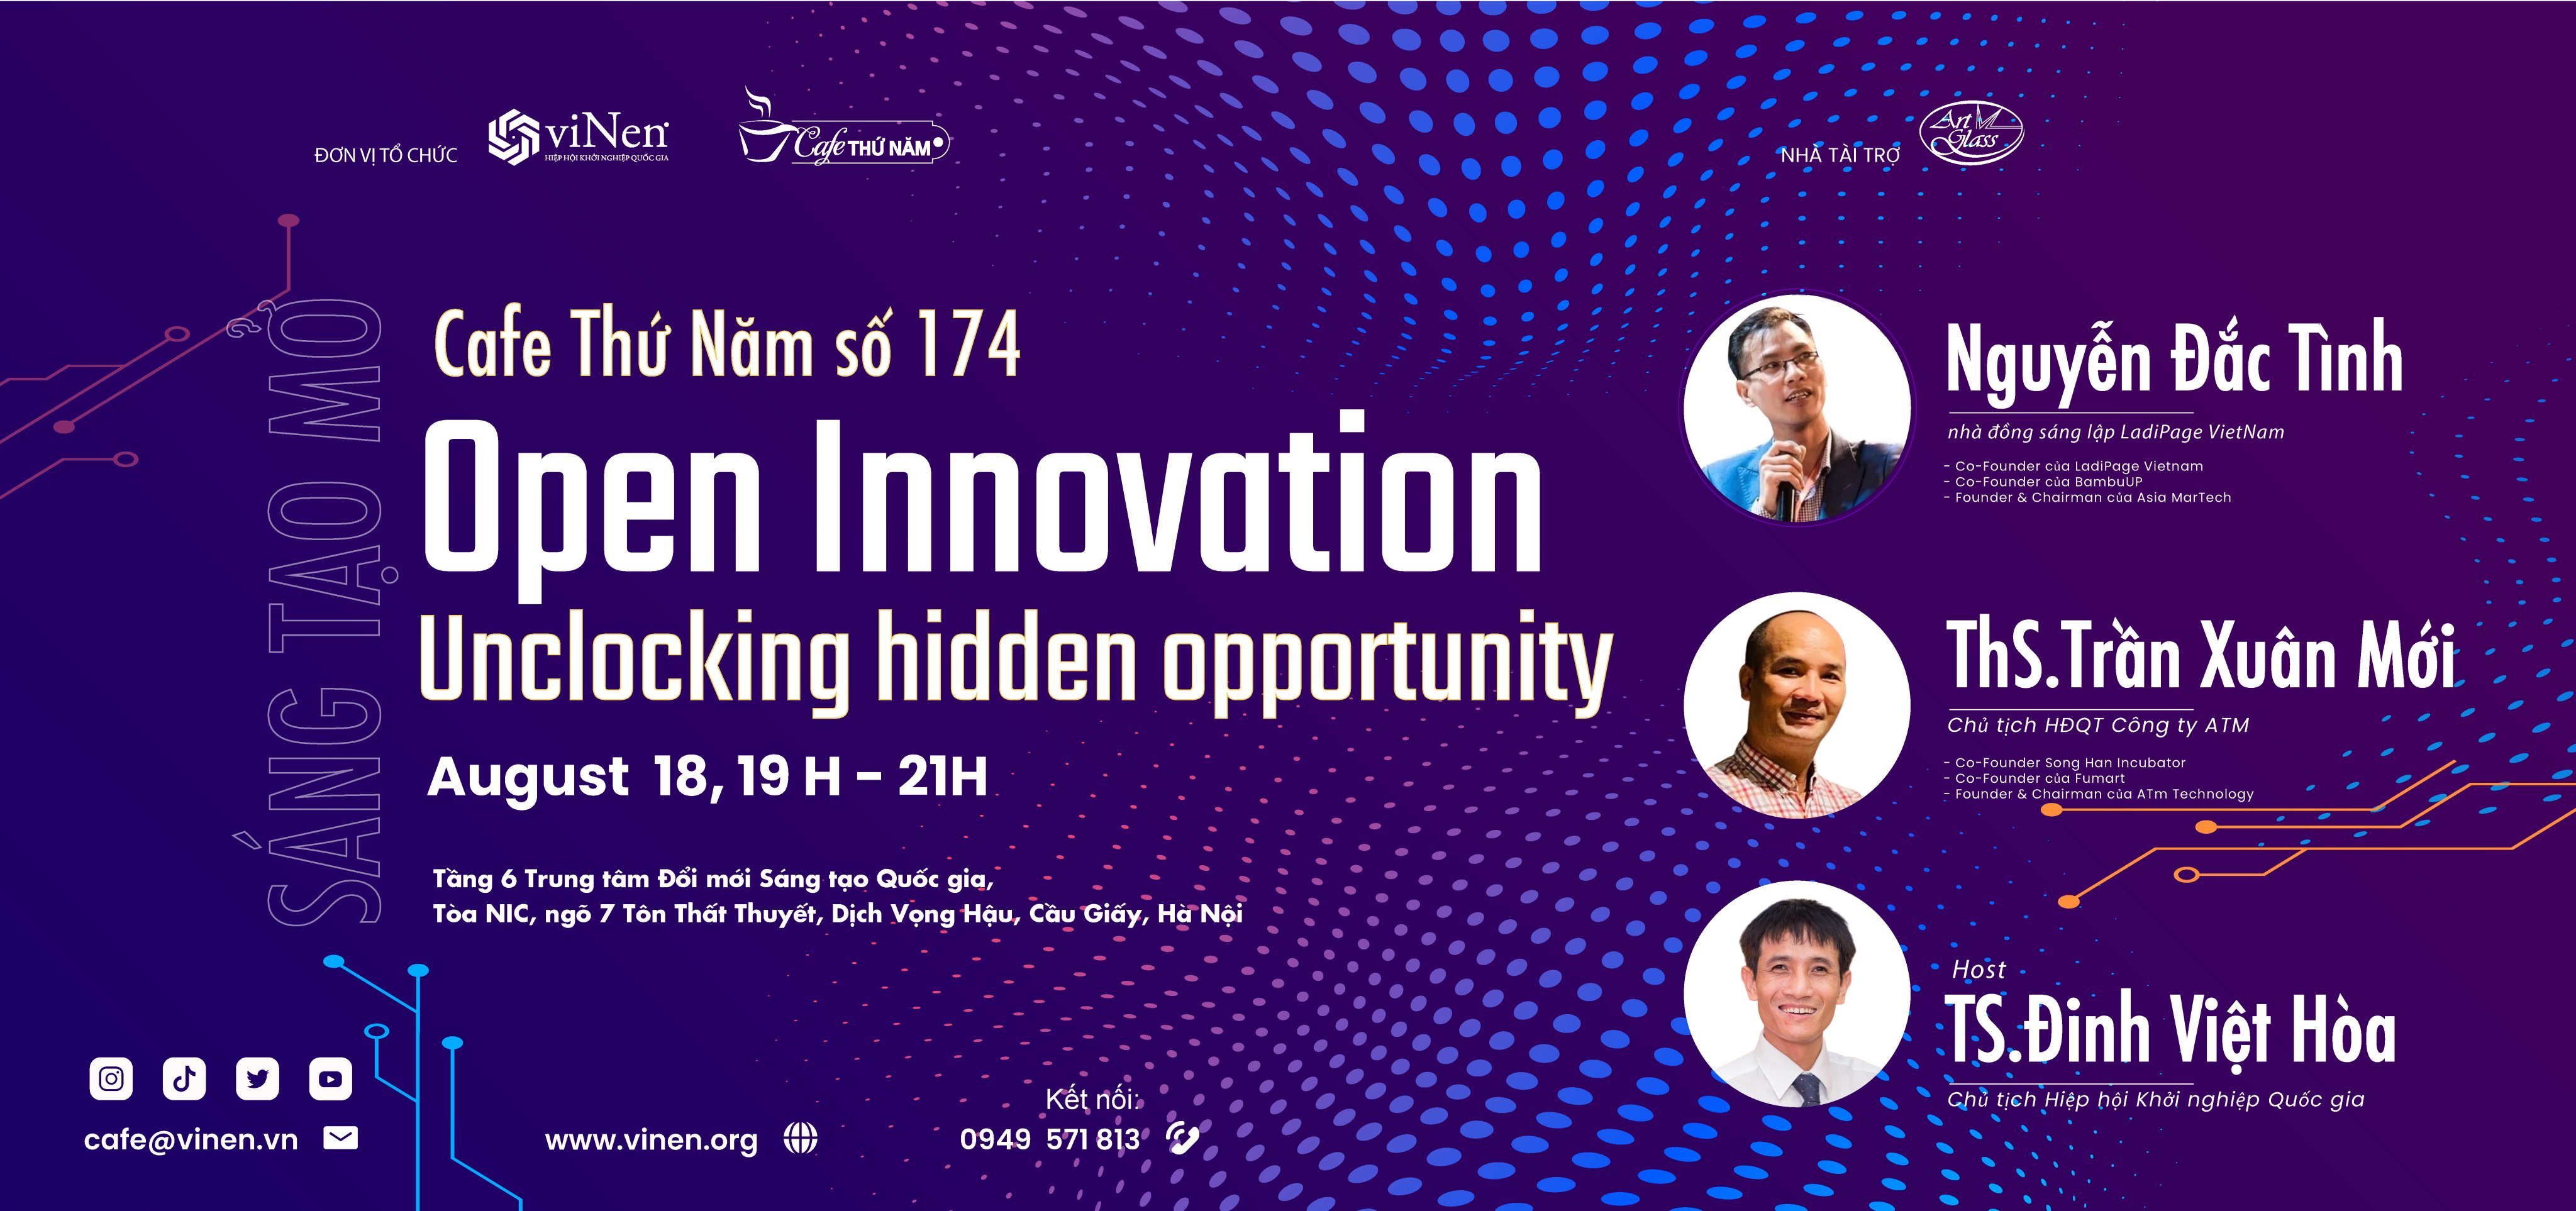 Open Innovation: Unclocking hidden opportunity